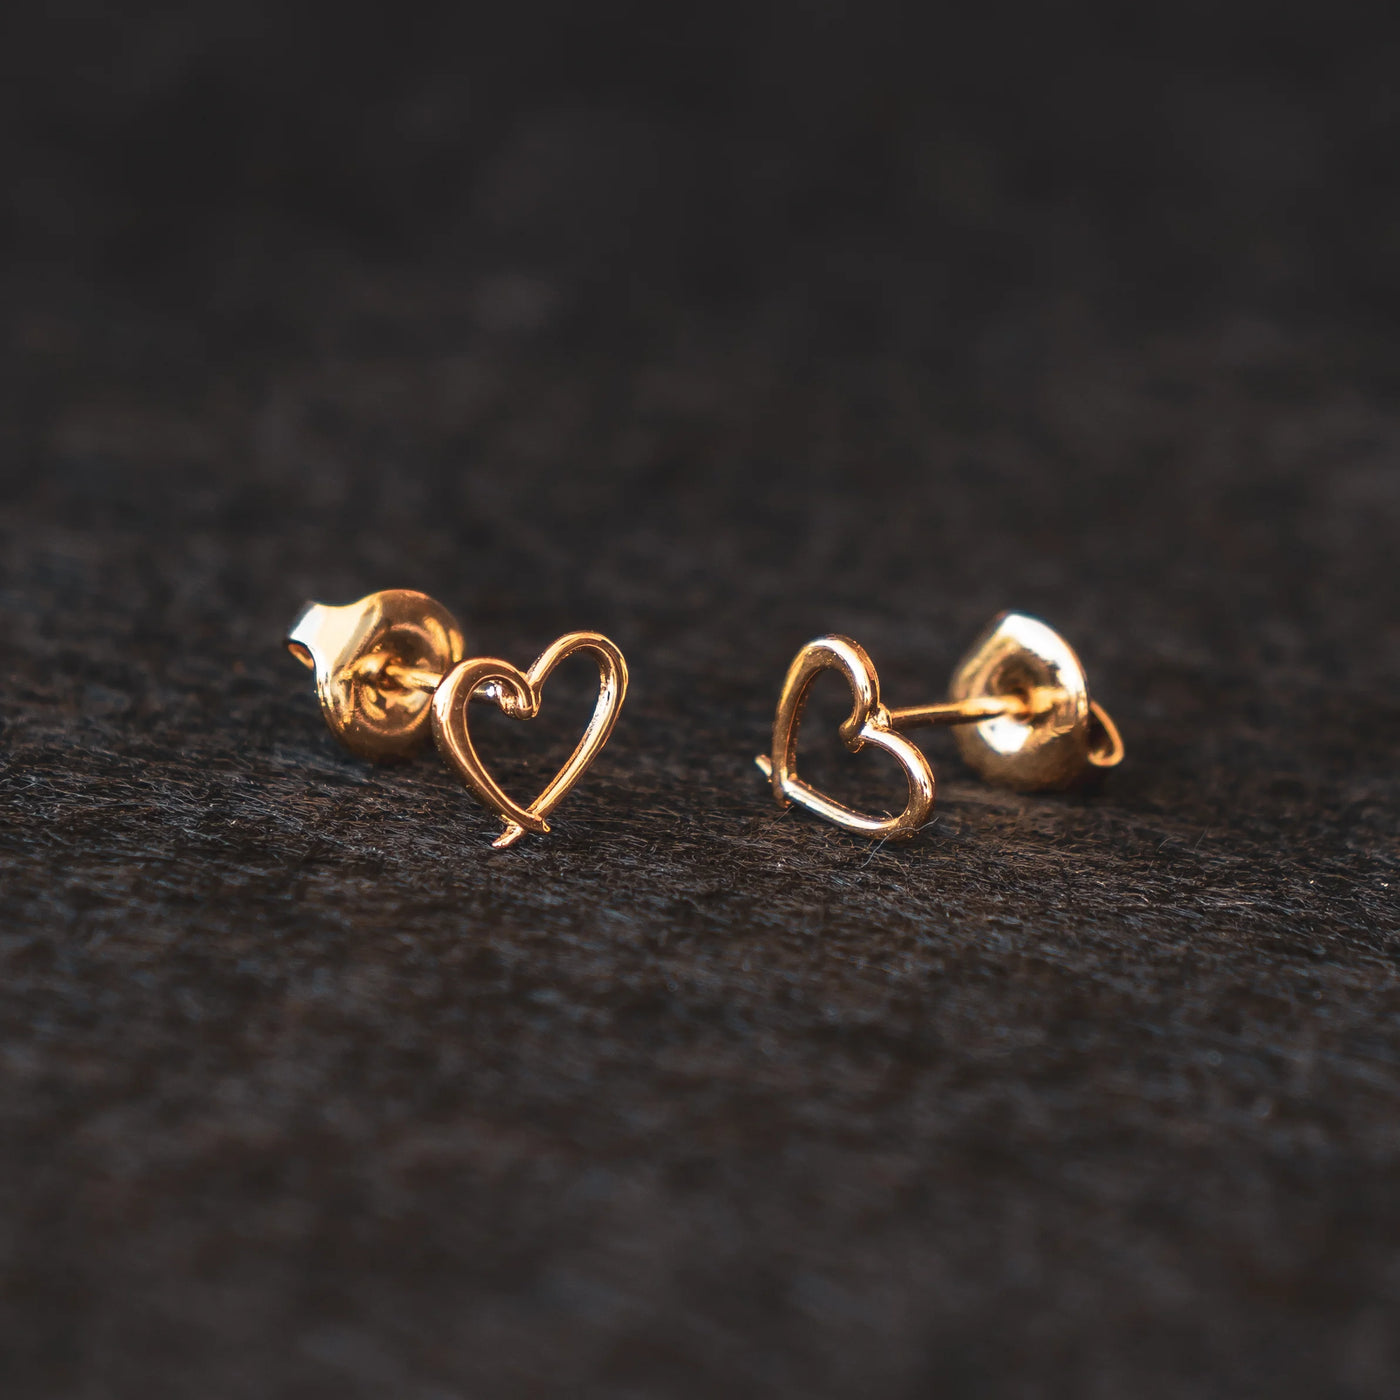 Boucles d'oreilles Orparima en forme de coeur de la Collection Puces d'Oreilles. Bijoux dorés dans un bain d'or 24 Carats par une entreprise française.